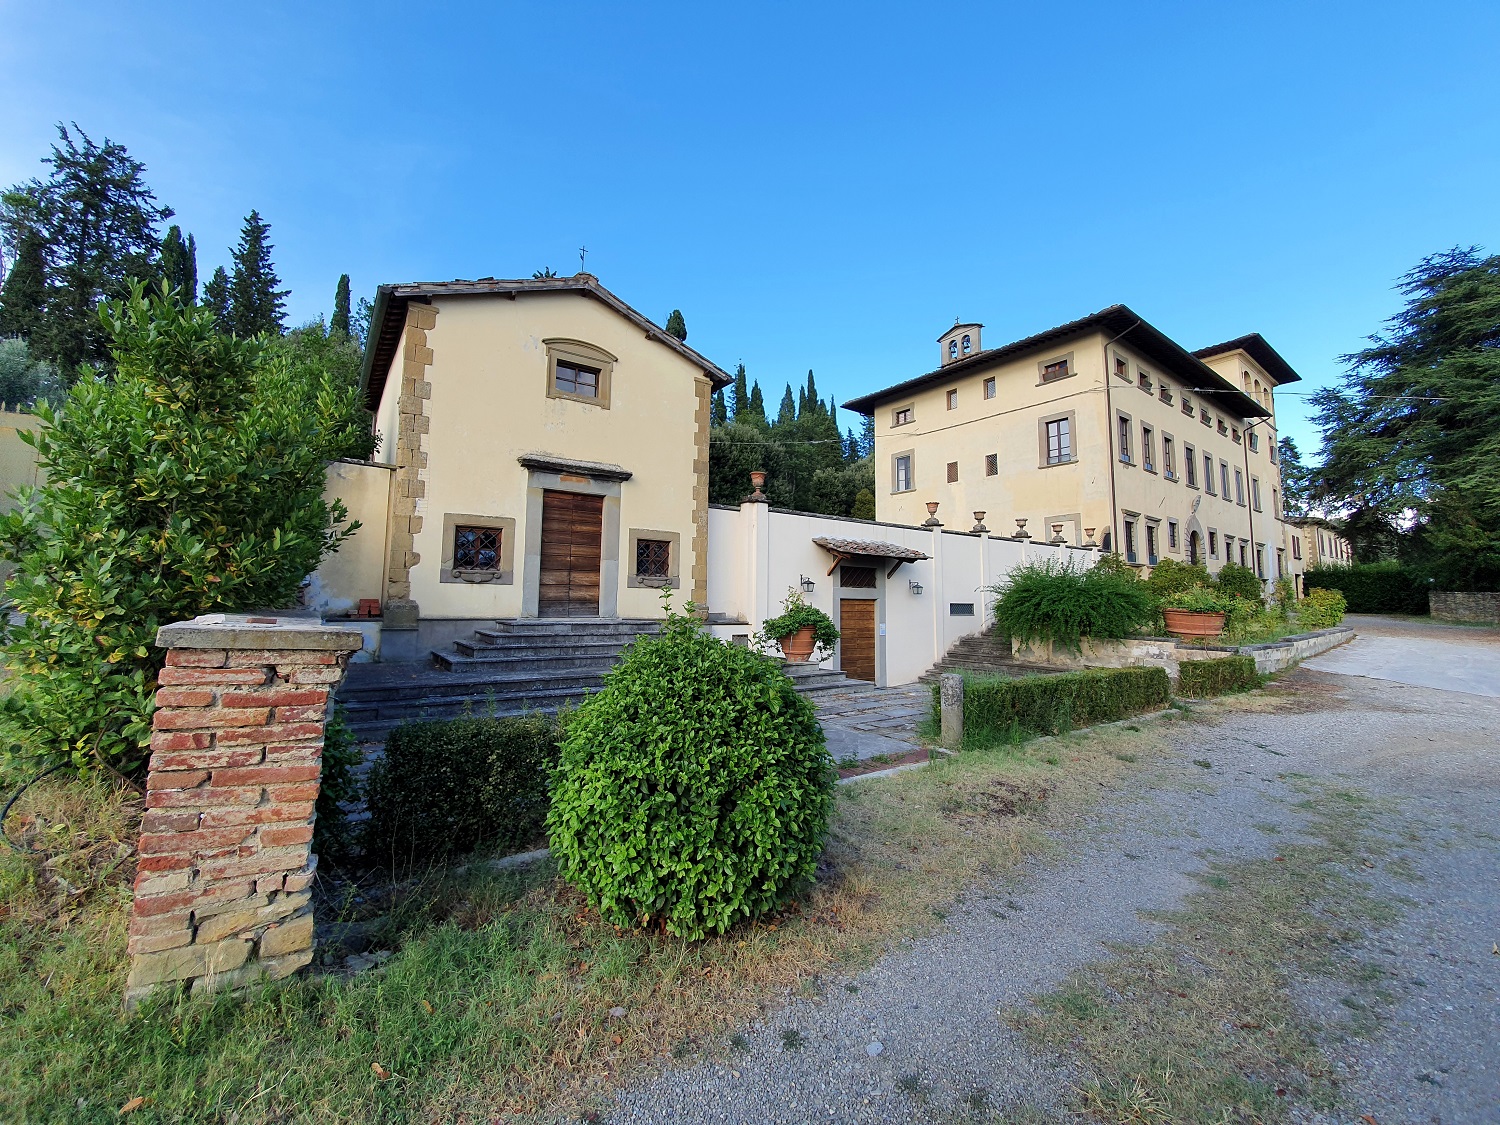 Villa Severi e dintorni, una serata per conoscere meglio il patrimonio storico-artistico a est di Arezzo